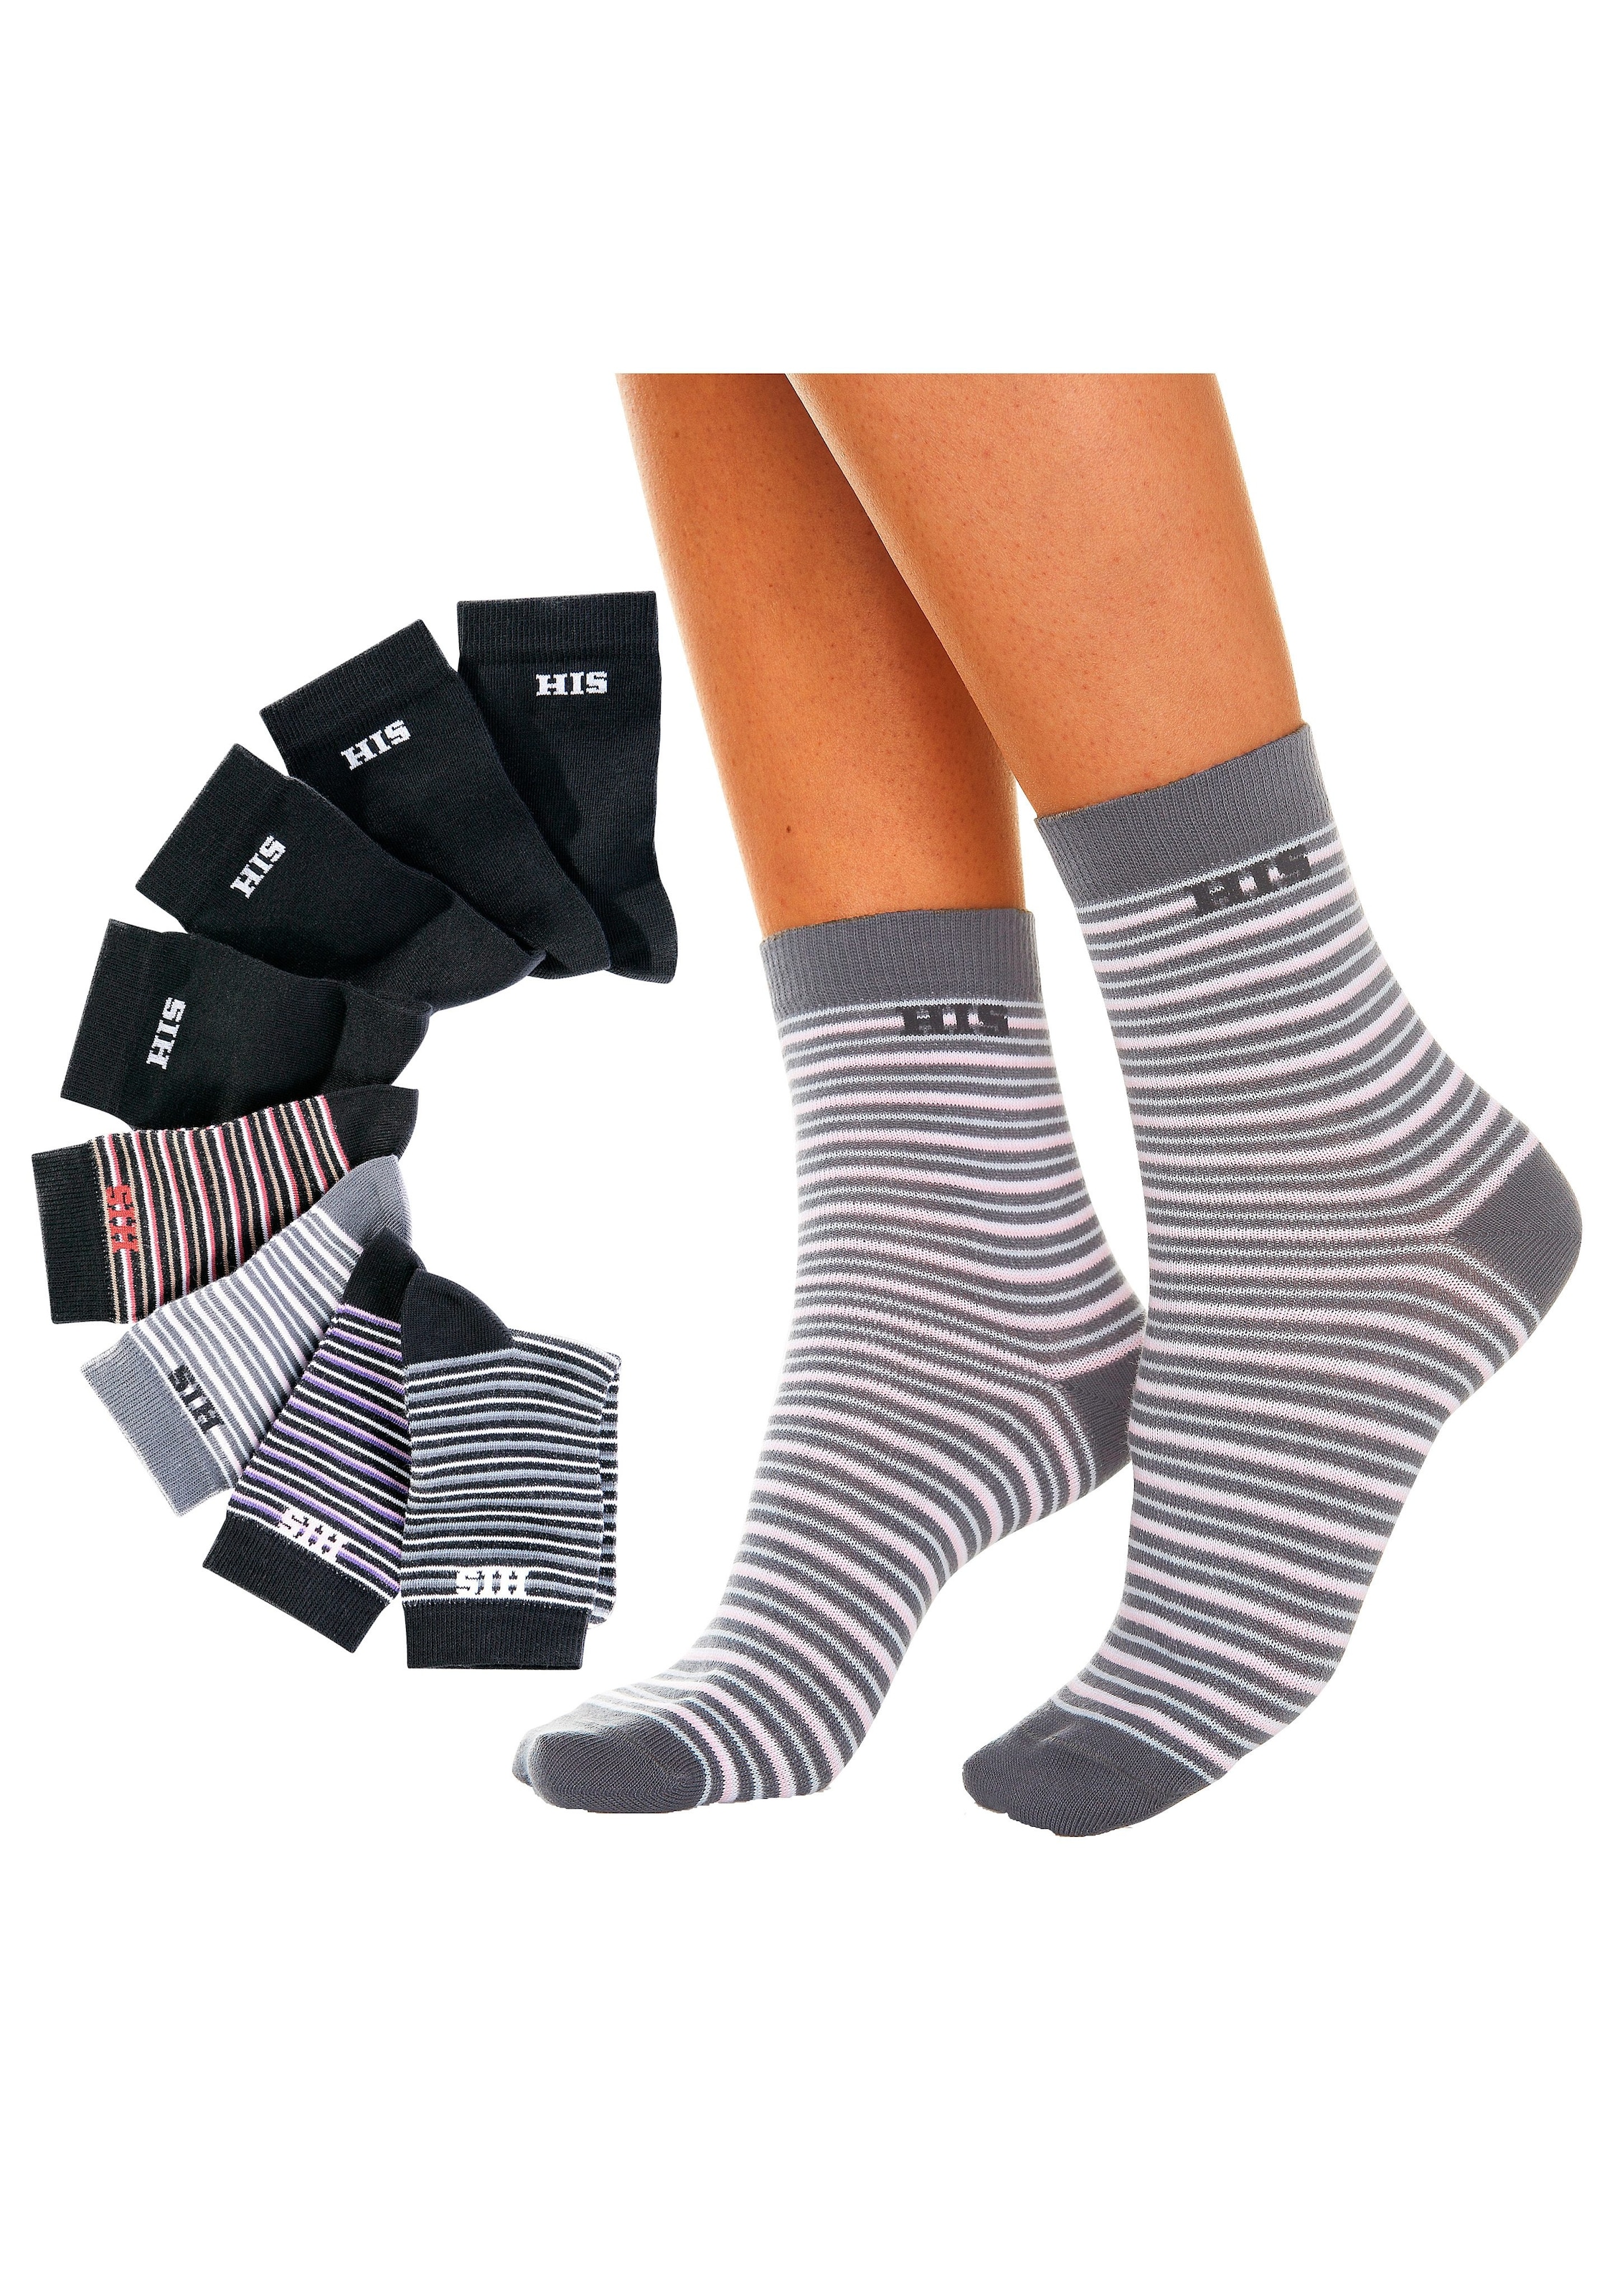 H.I.S Socken, unifarben shoppen (8 OTTO und bei Paar), geringelt online